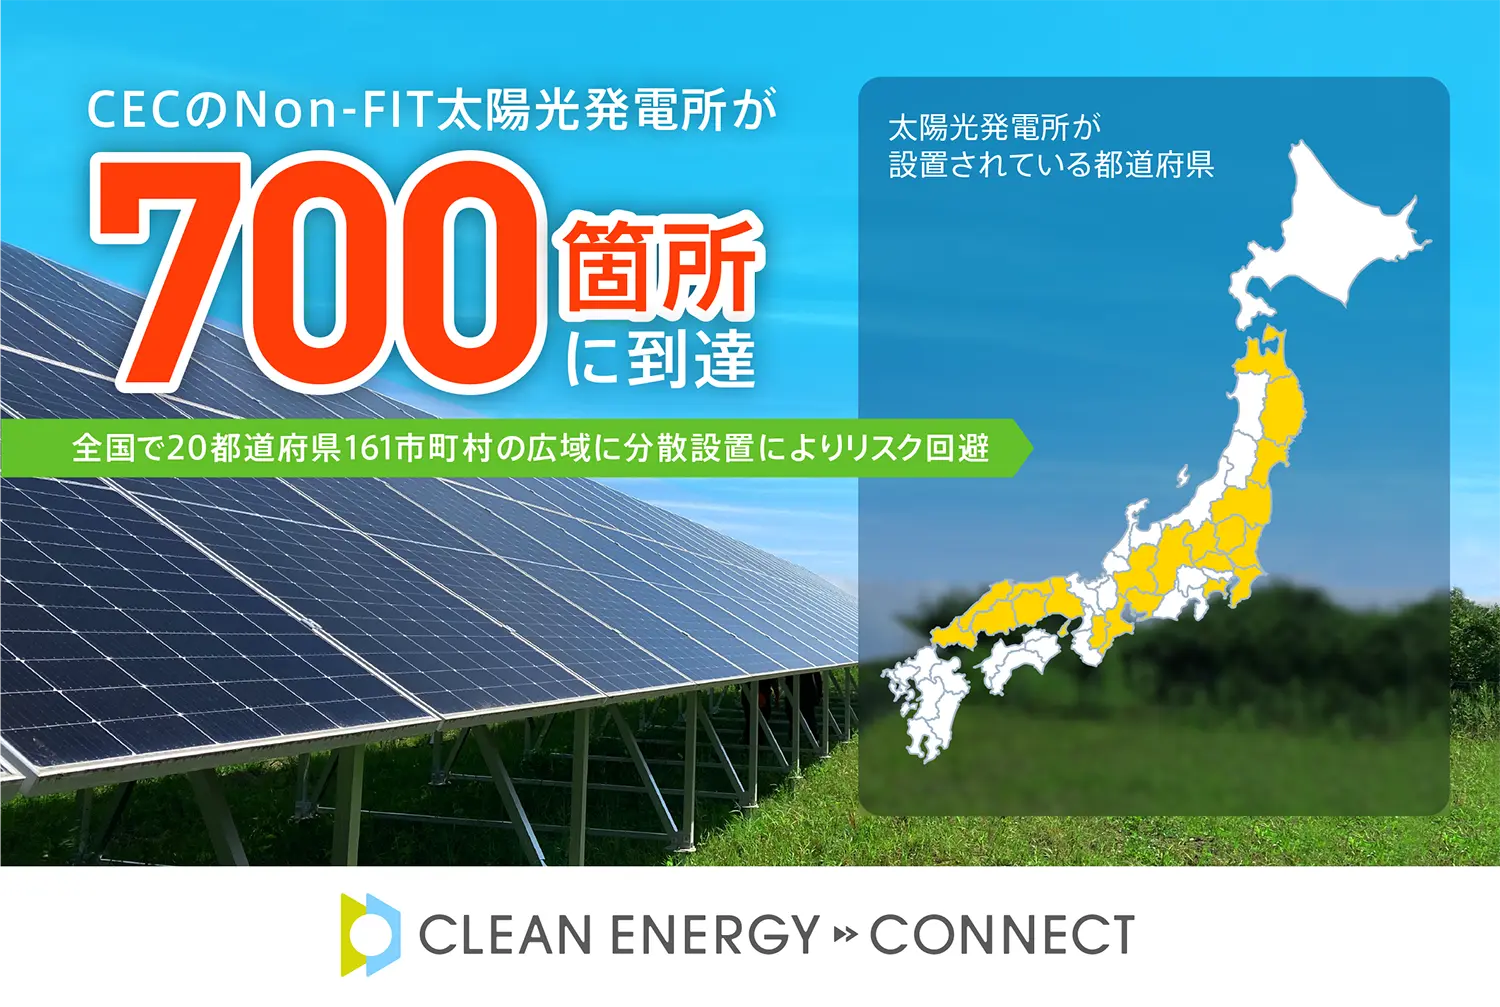 脱炭素ソリューションを手がけるクリーンエナジーコネクトのNon-FIT太陽光発電所が700箇所に到達 | 株式会社クリーンエナジーコネクト